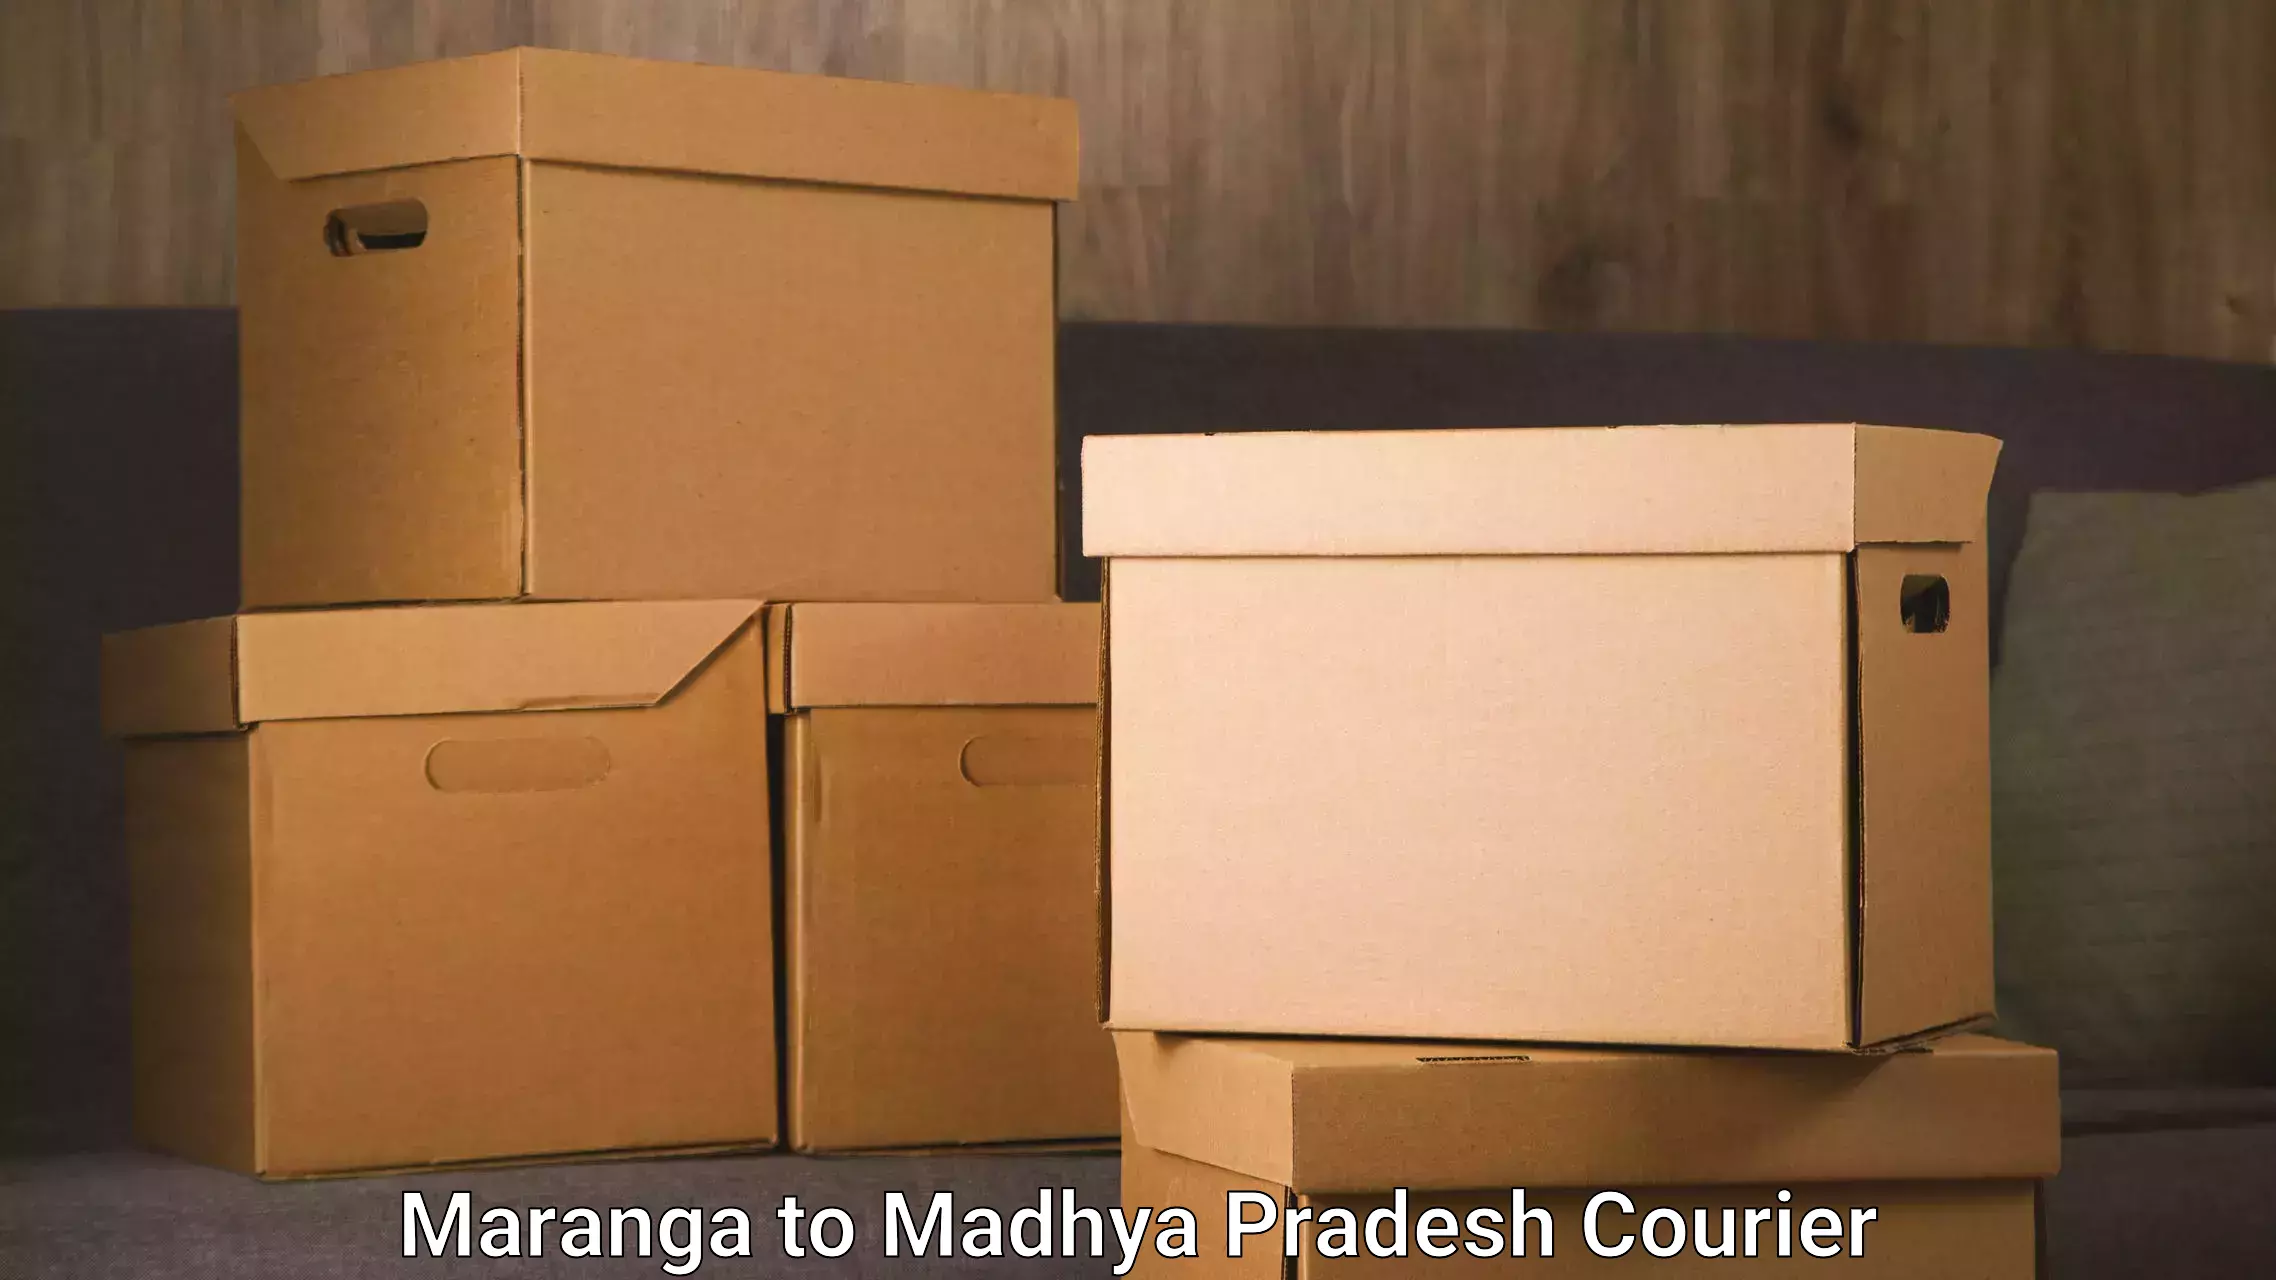 Furniture transport professionals Maranga to Madhya Pradesh